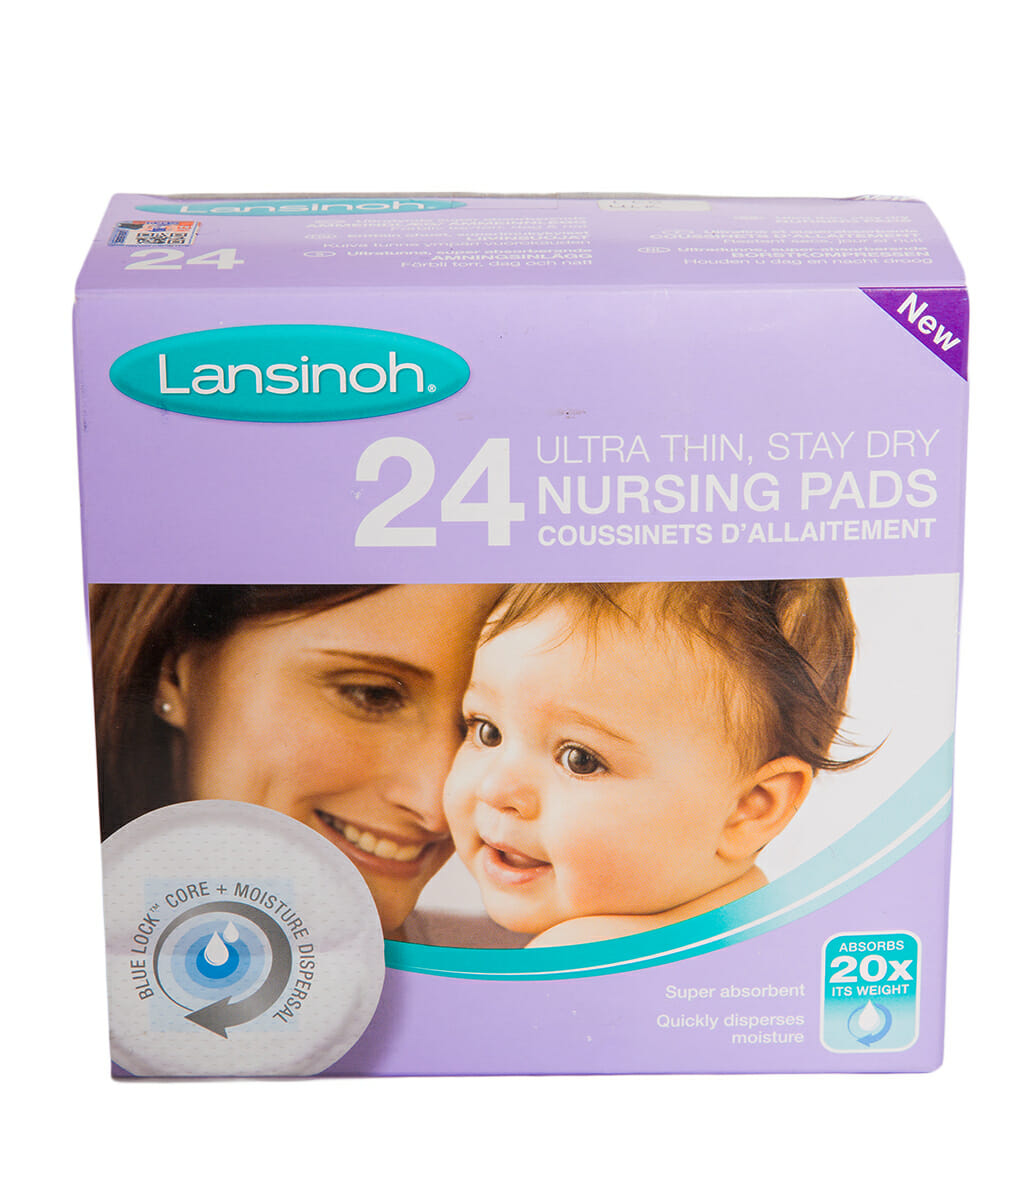 Lansinoh_24-Nursing-Pads_1.jpg